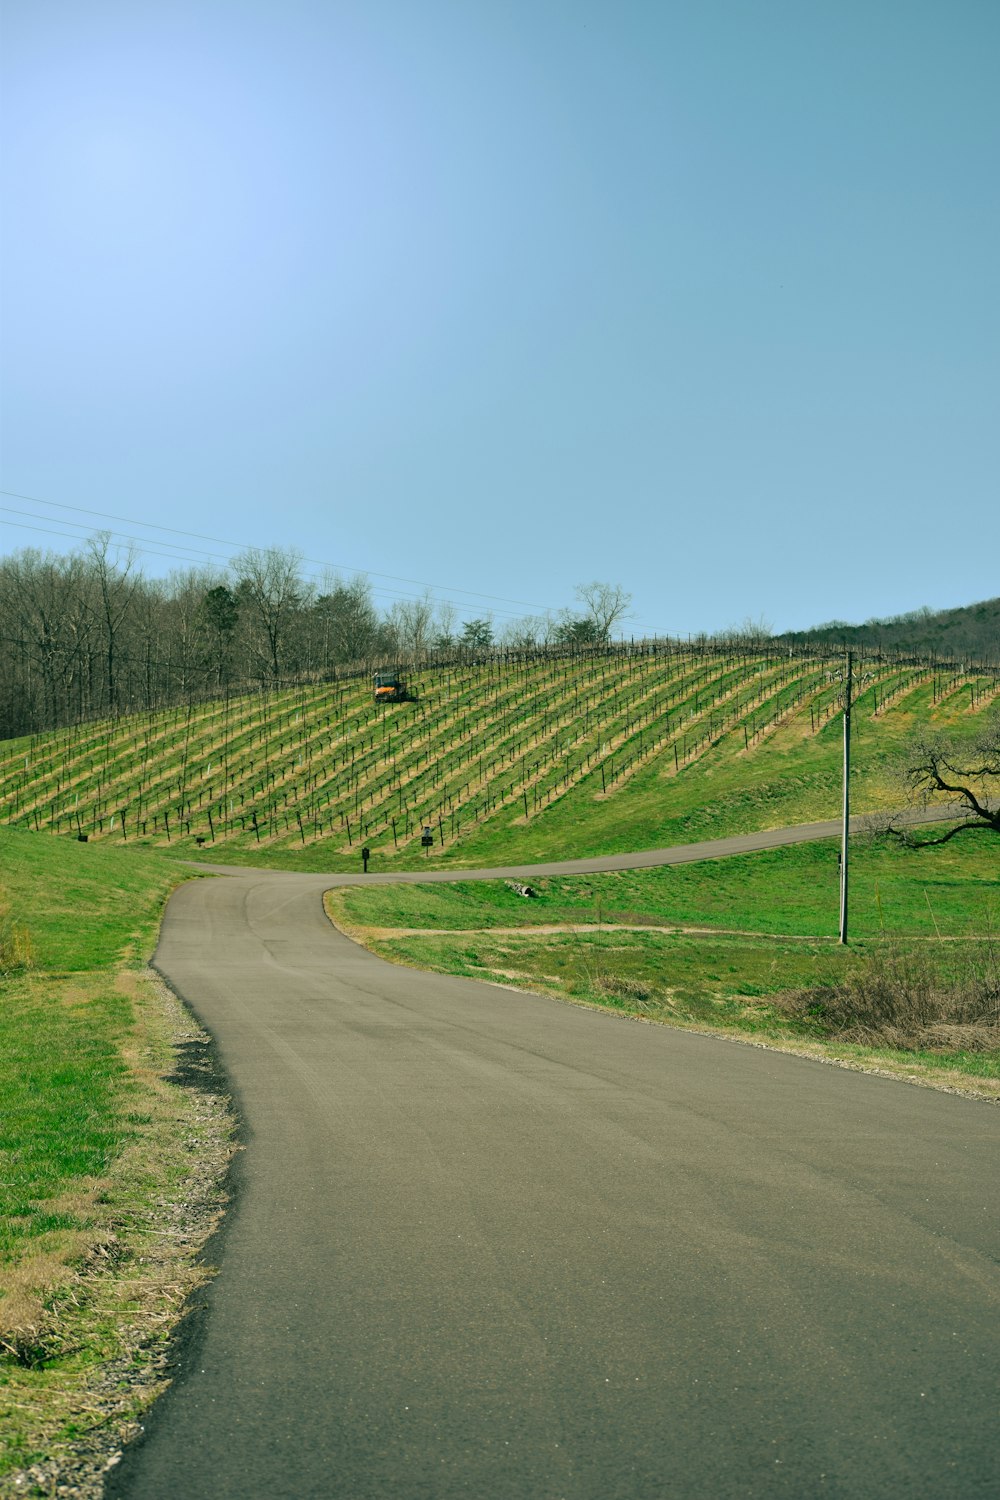 a road going through a lush green field